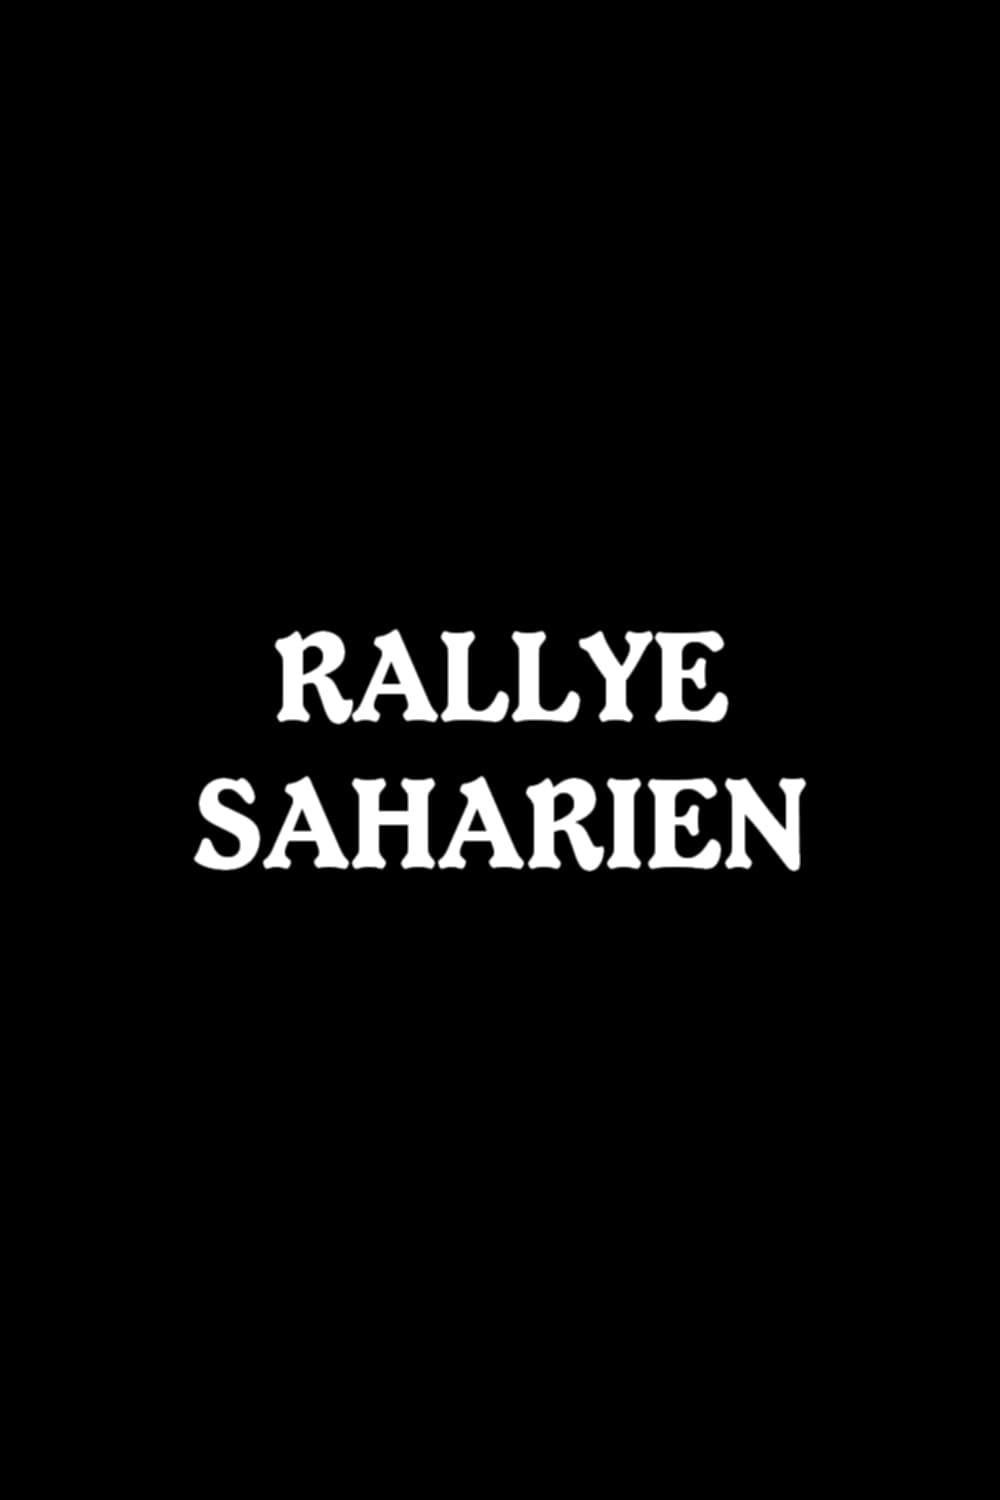 Rallye saharien